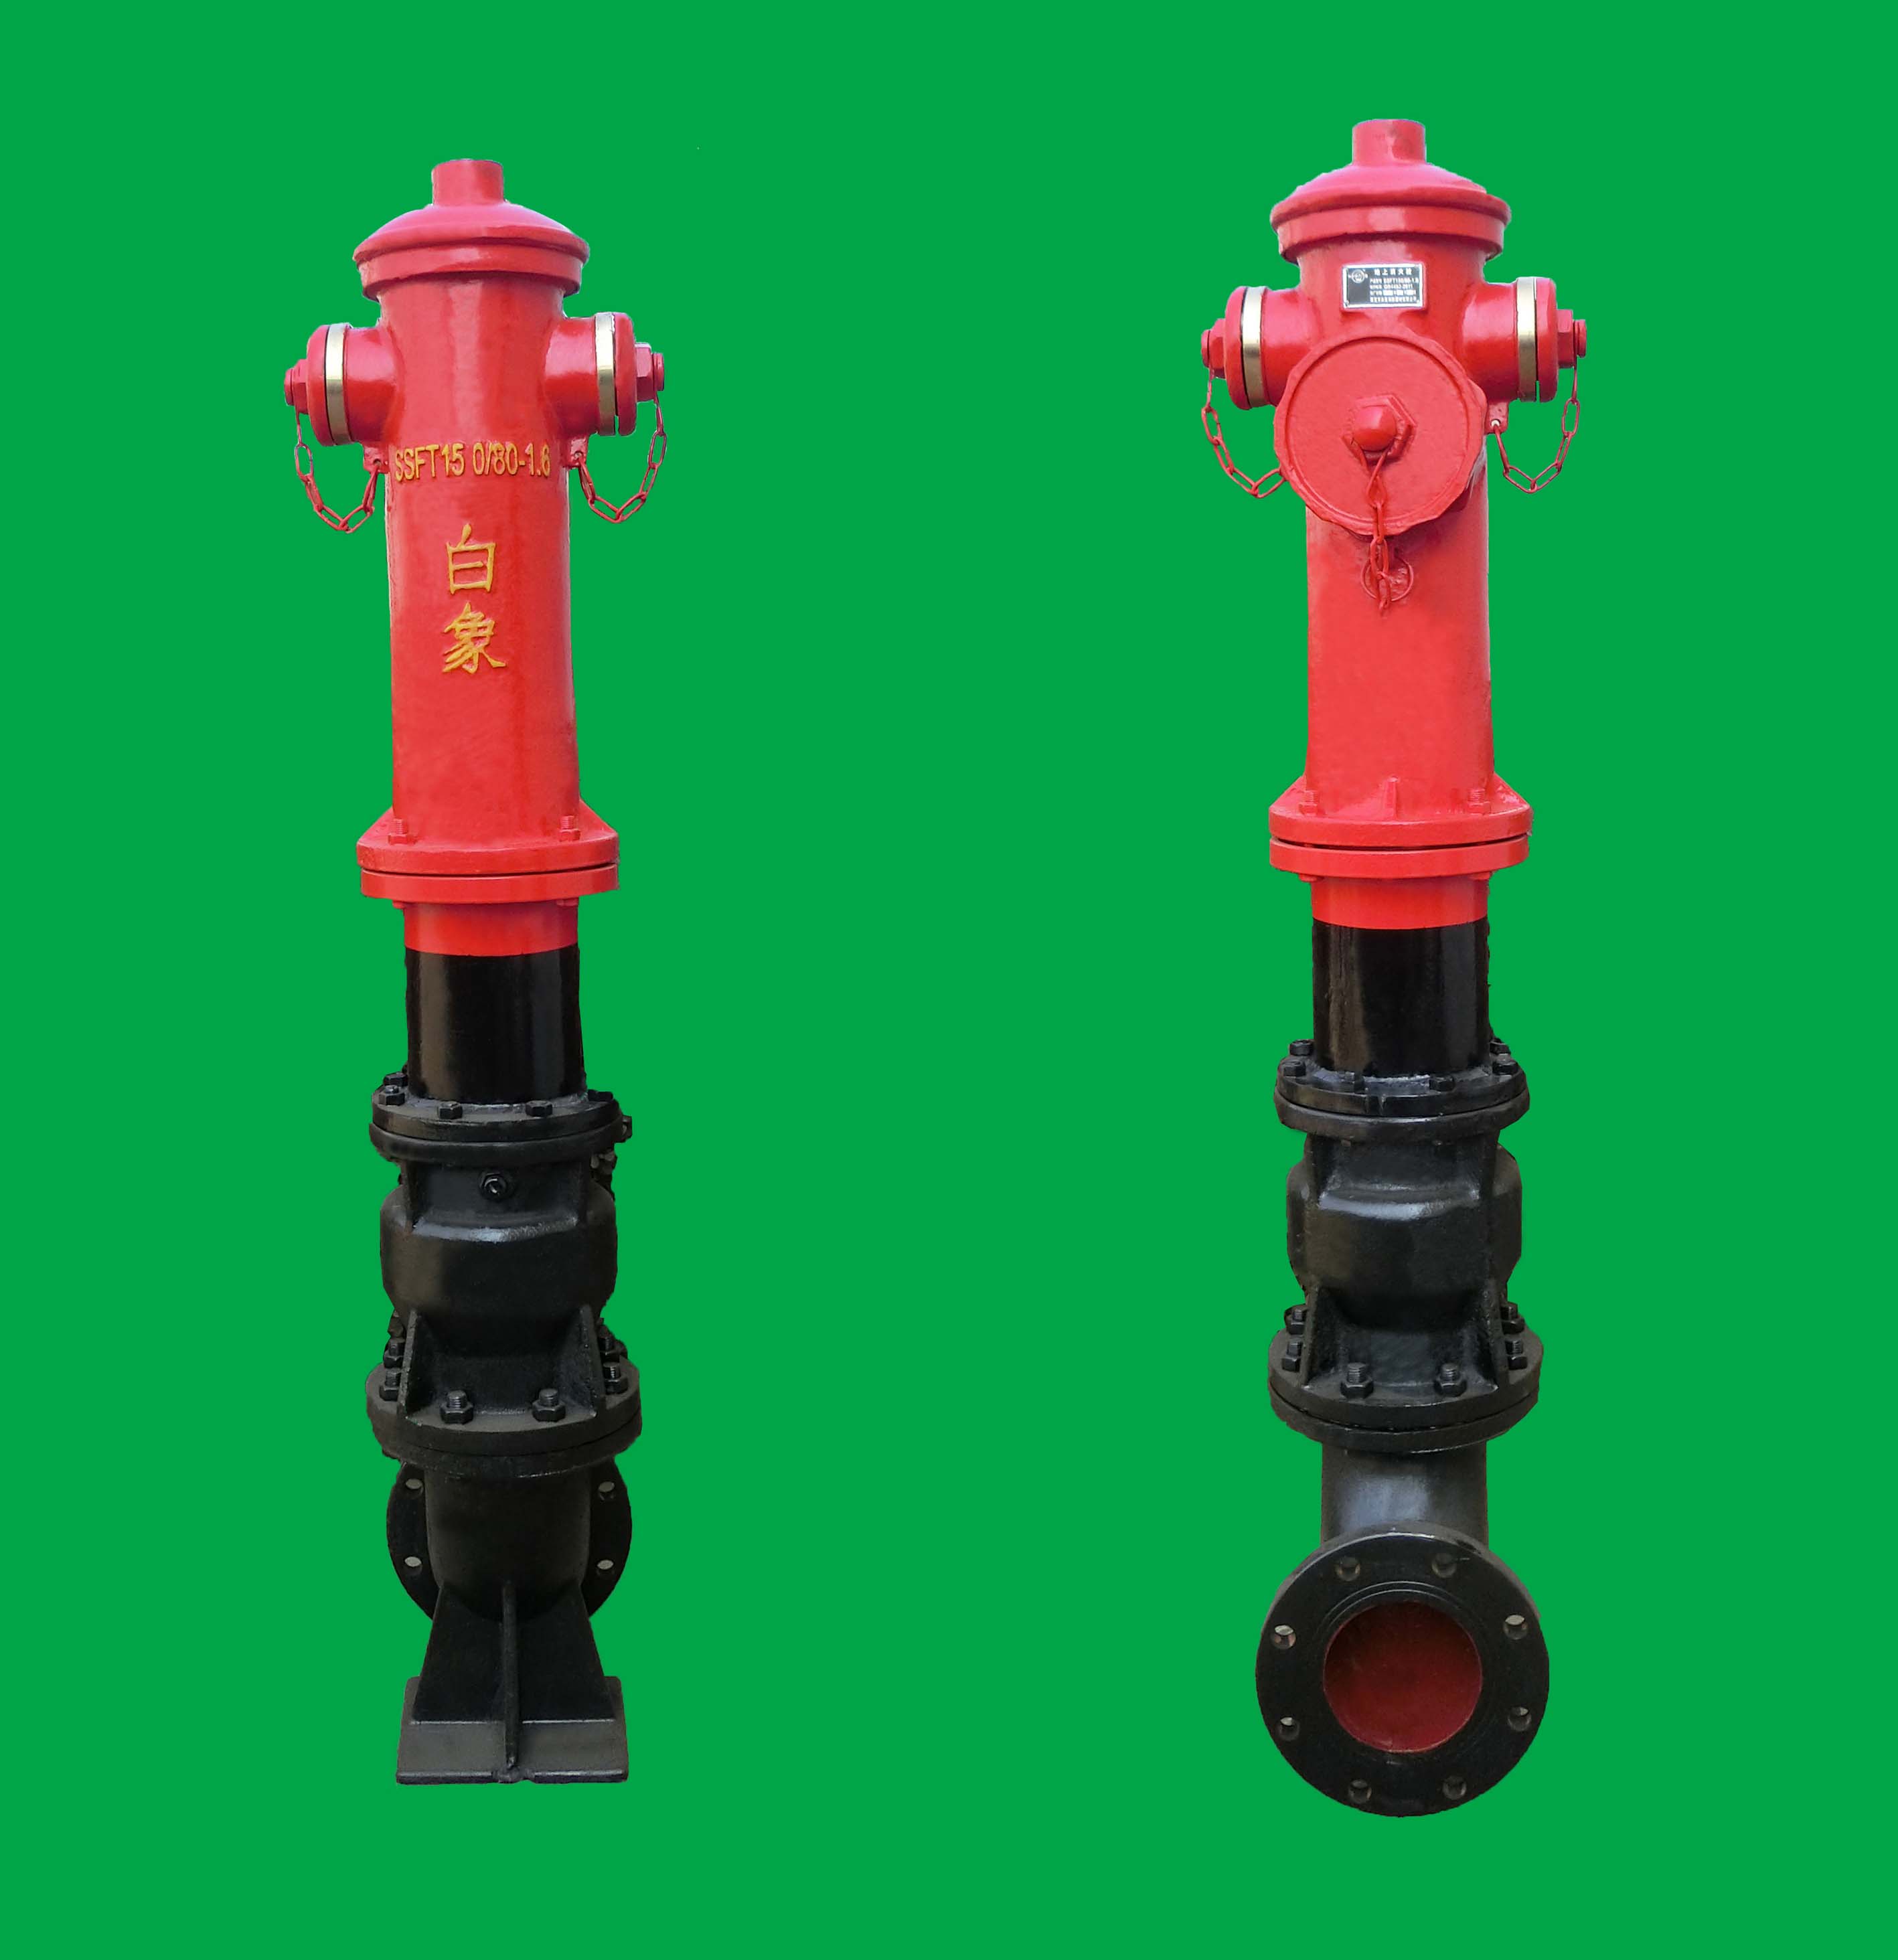 東營防撞調壓型室外消火栓SSFT150/80型